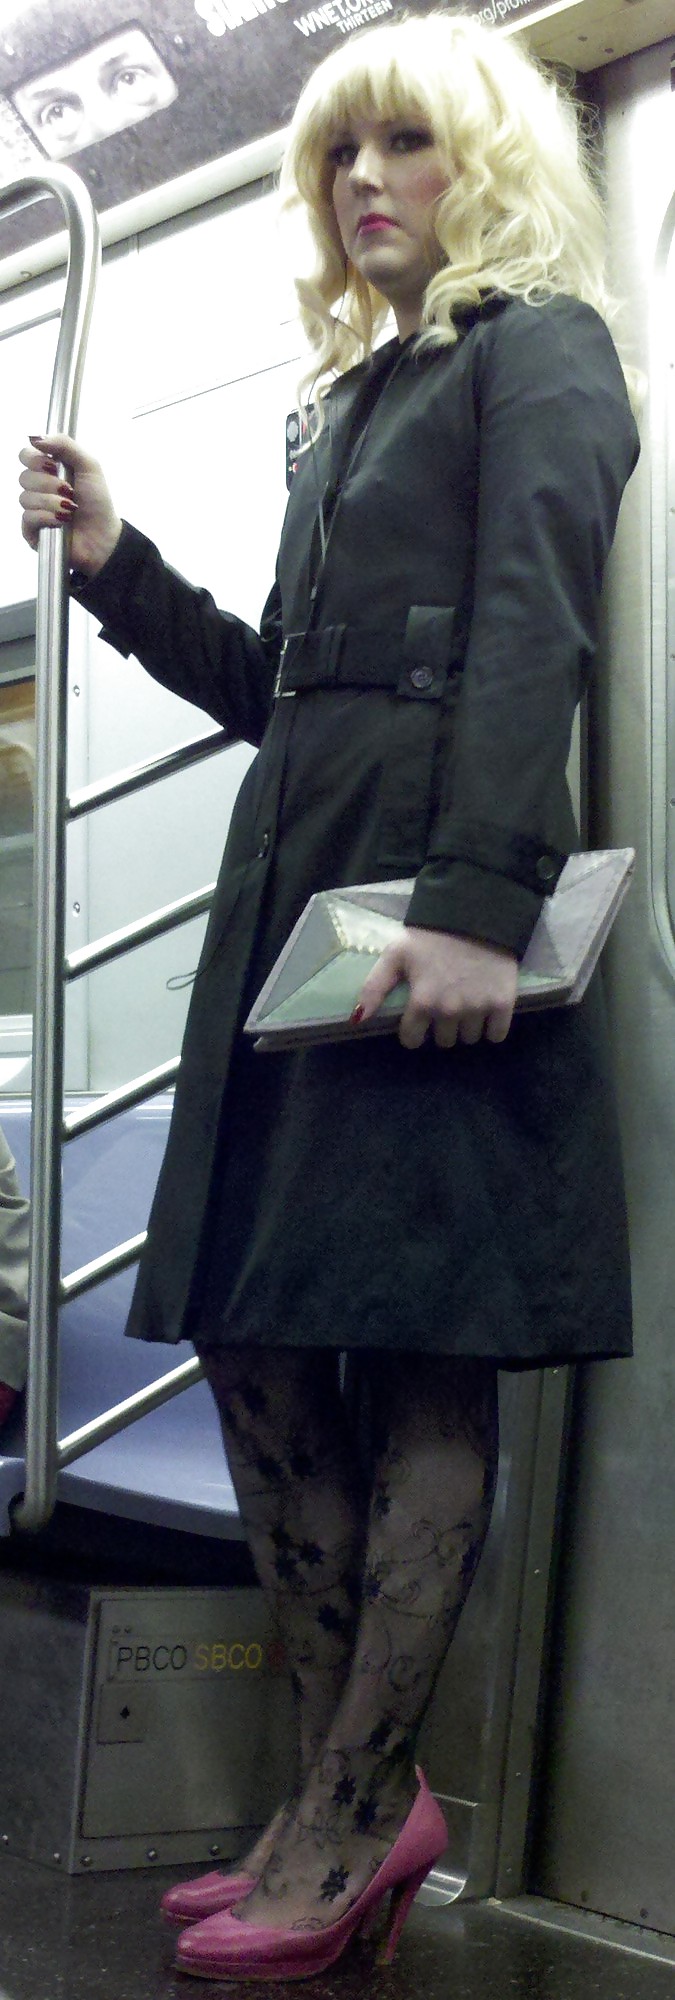 ニューヨークの地下鉄の女の子 107 dude looks like a lady
 #6603898